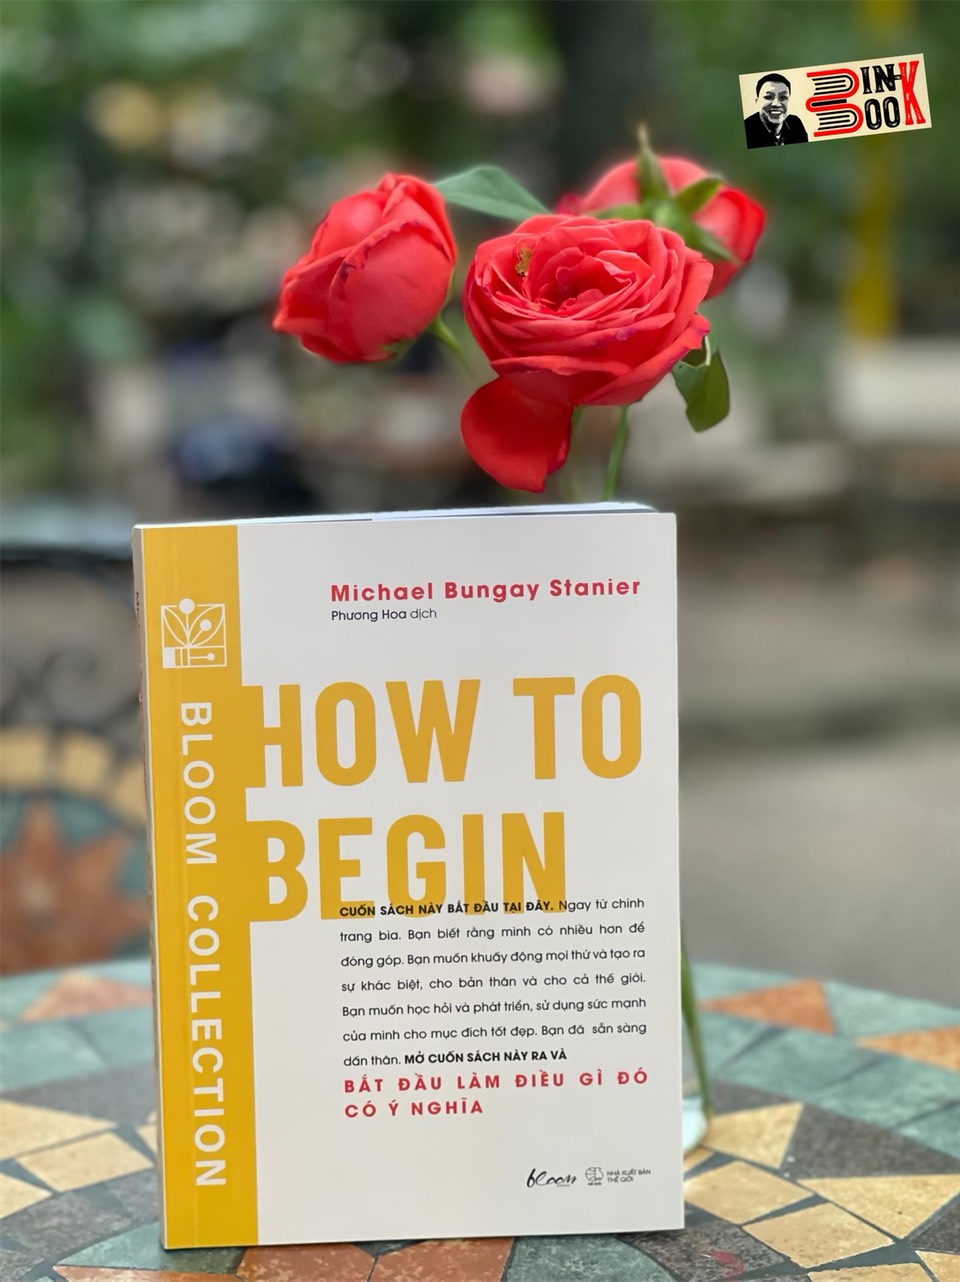 HOW TO BEGIN - Bắt đầu làm điều gì đó có ý nghĩa– Michael Bungay Stanier- Phương Hoa dịch - AZ Việt Nam – NXB Thế Giới